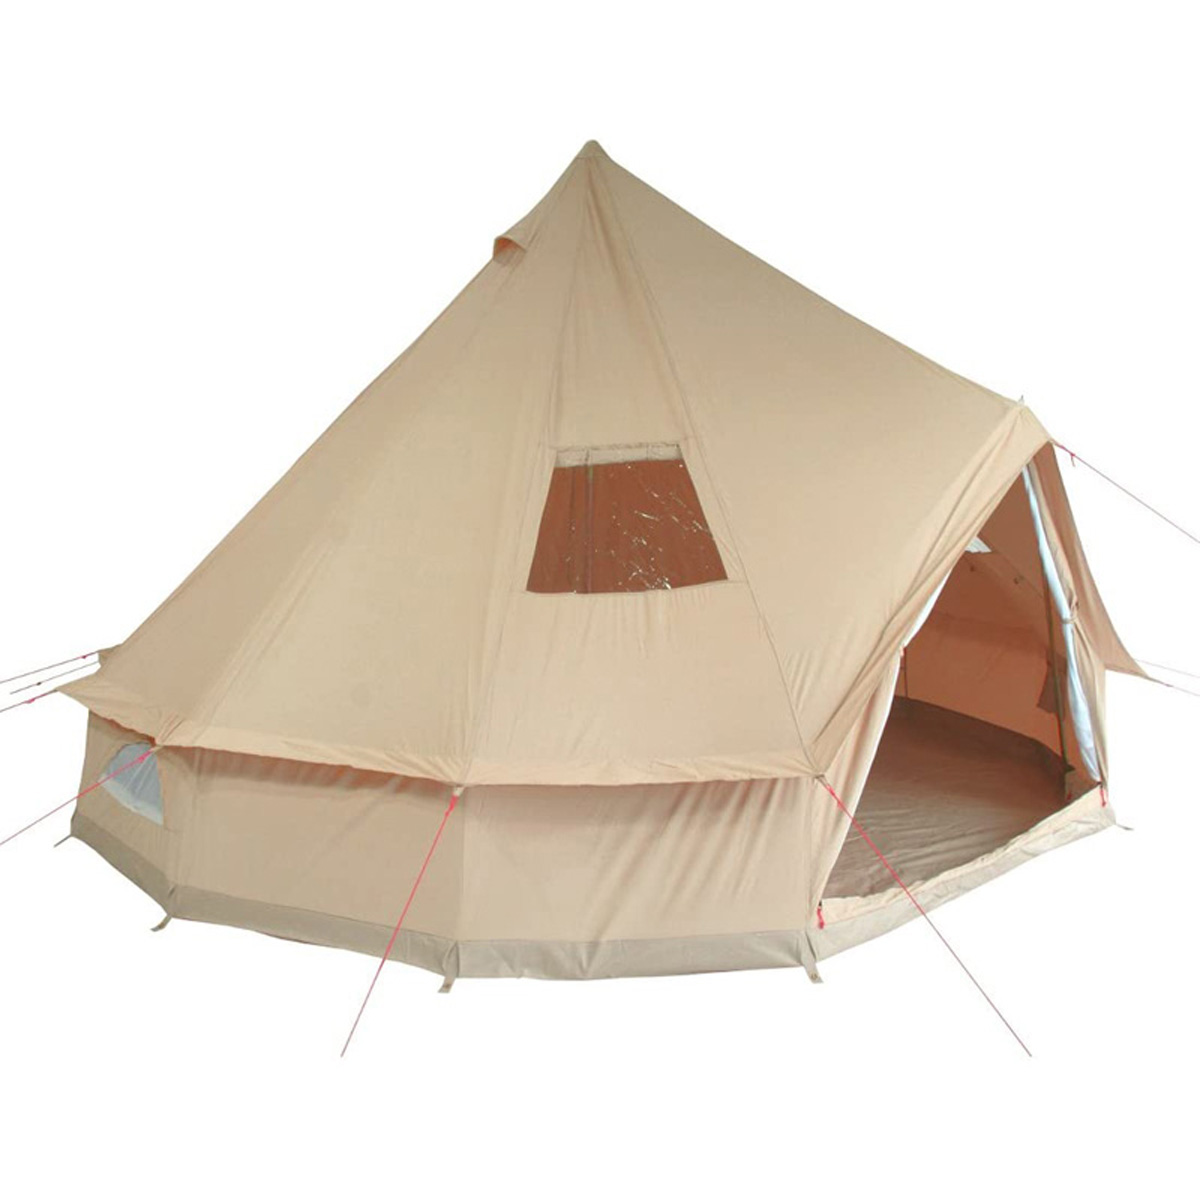 TEEPEE Tents